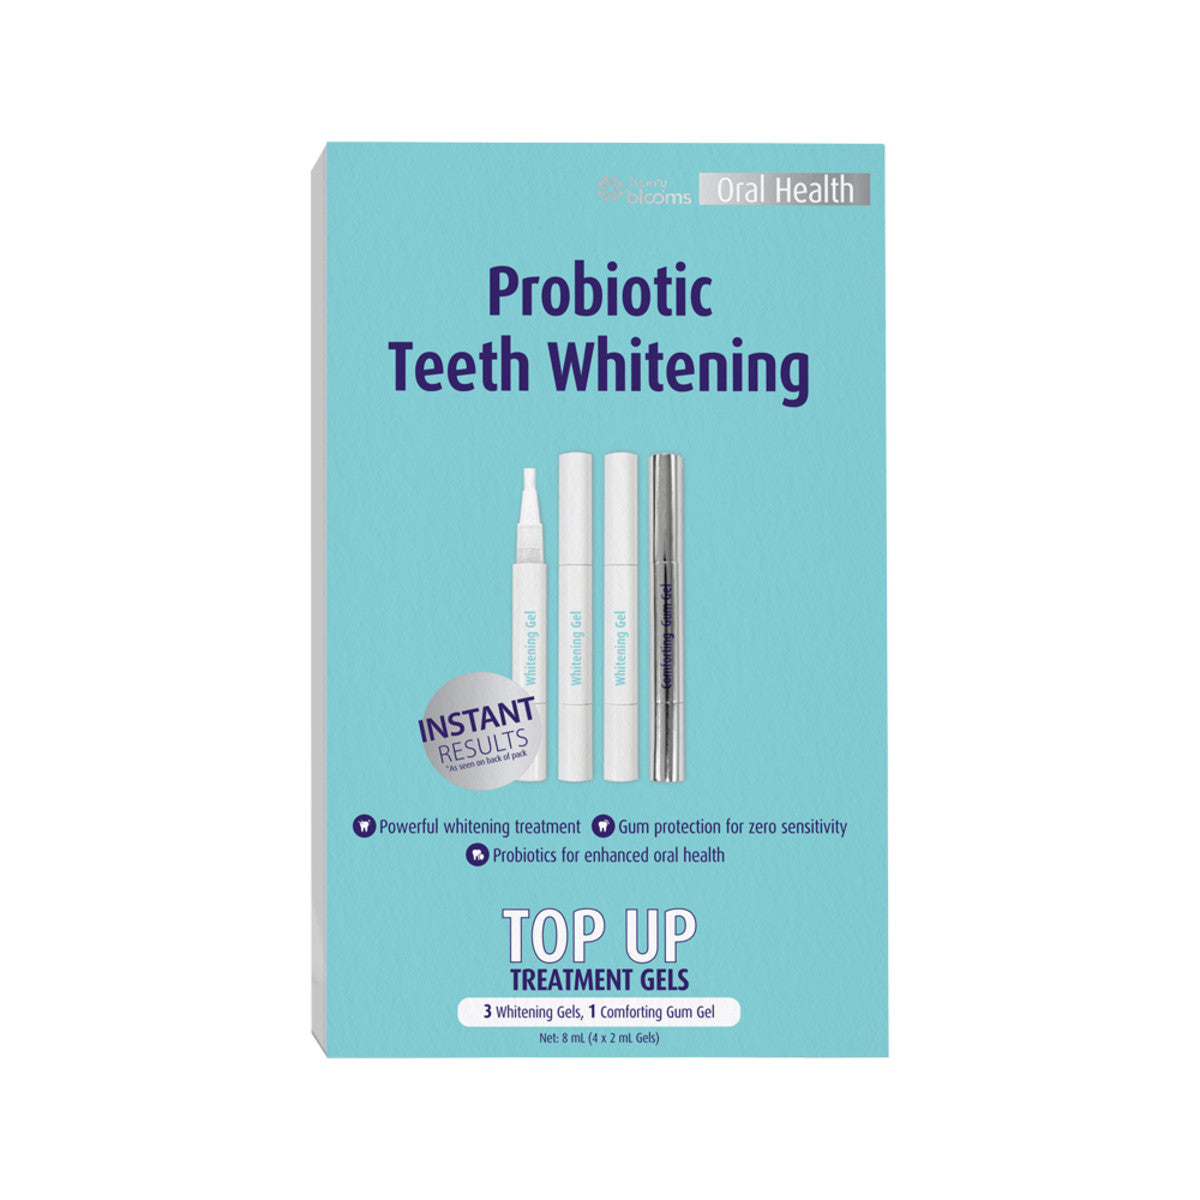 Henry Blooms - Oral Health Probiotic Teeth Whitening Top Up Treatment Gels (4 x 2ml Gels)